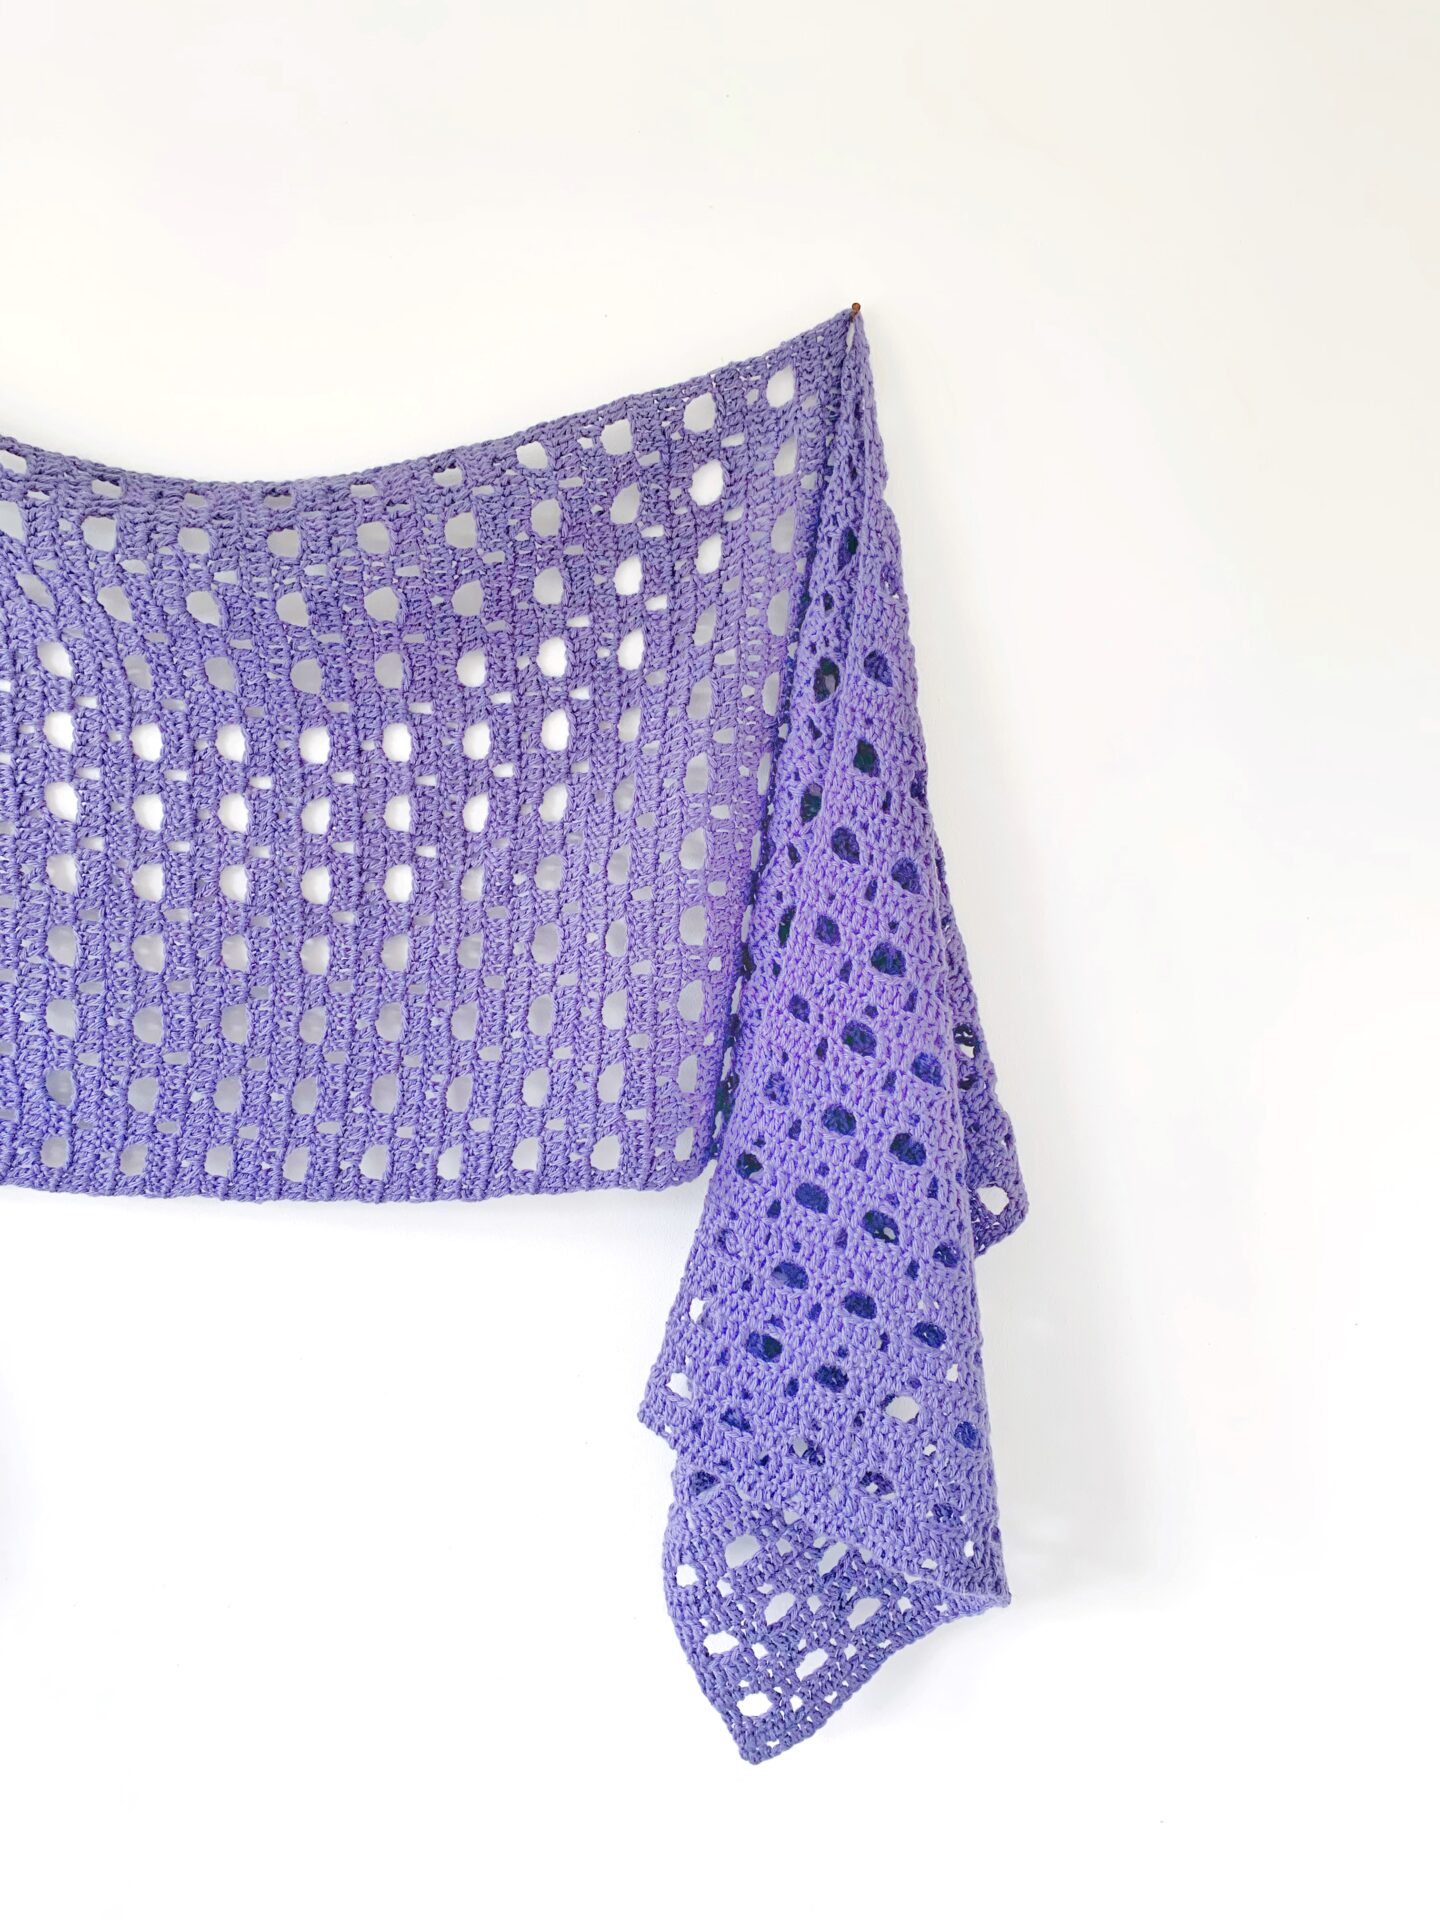 Free Crochet Pattern - Akos Sideways Shawl